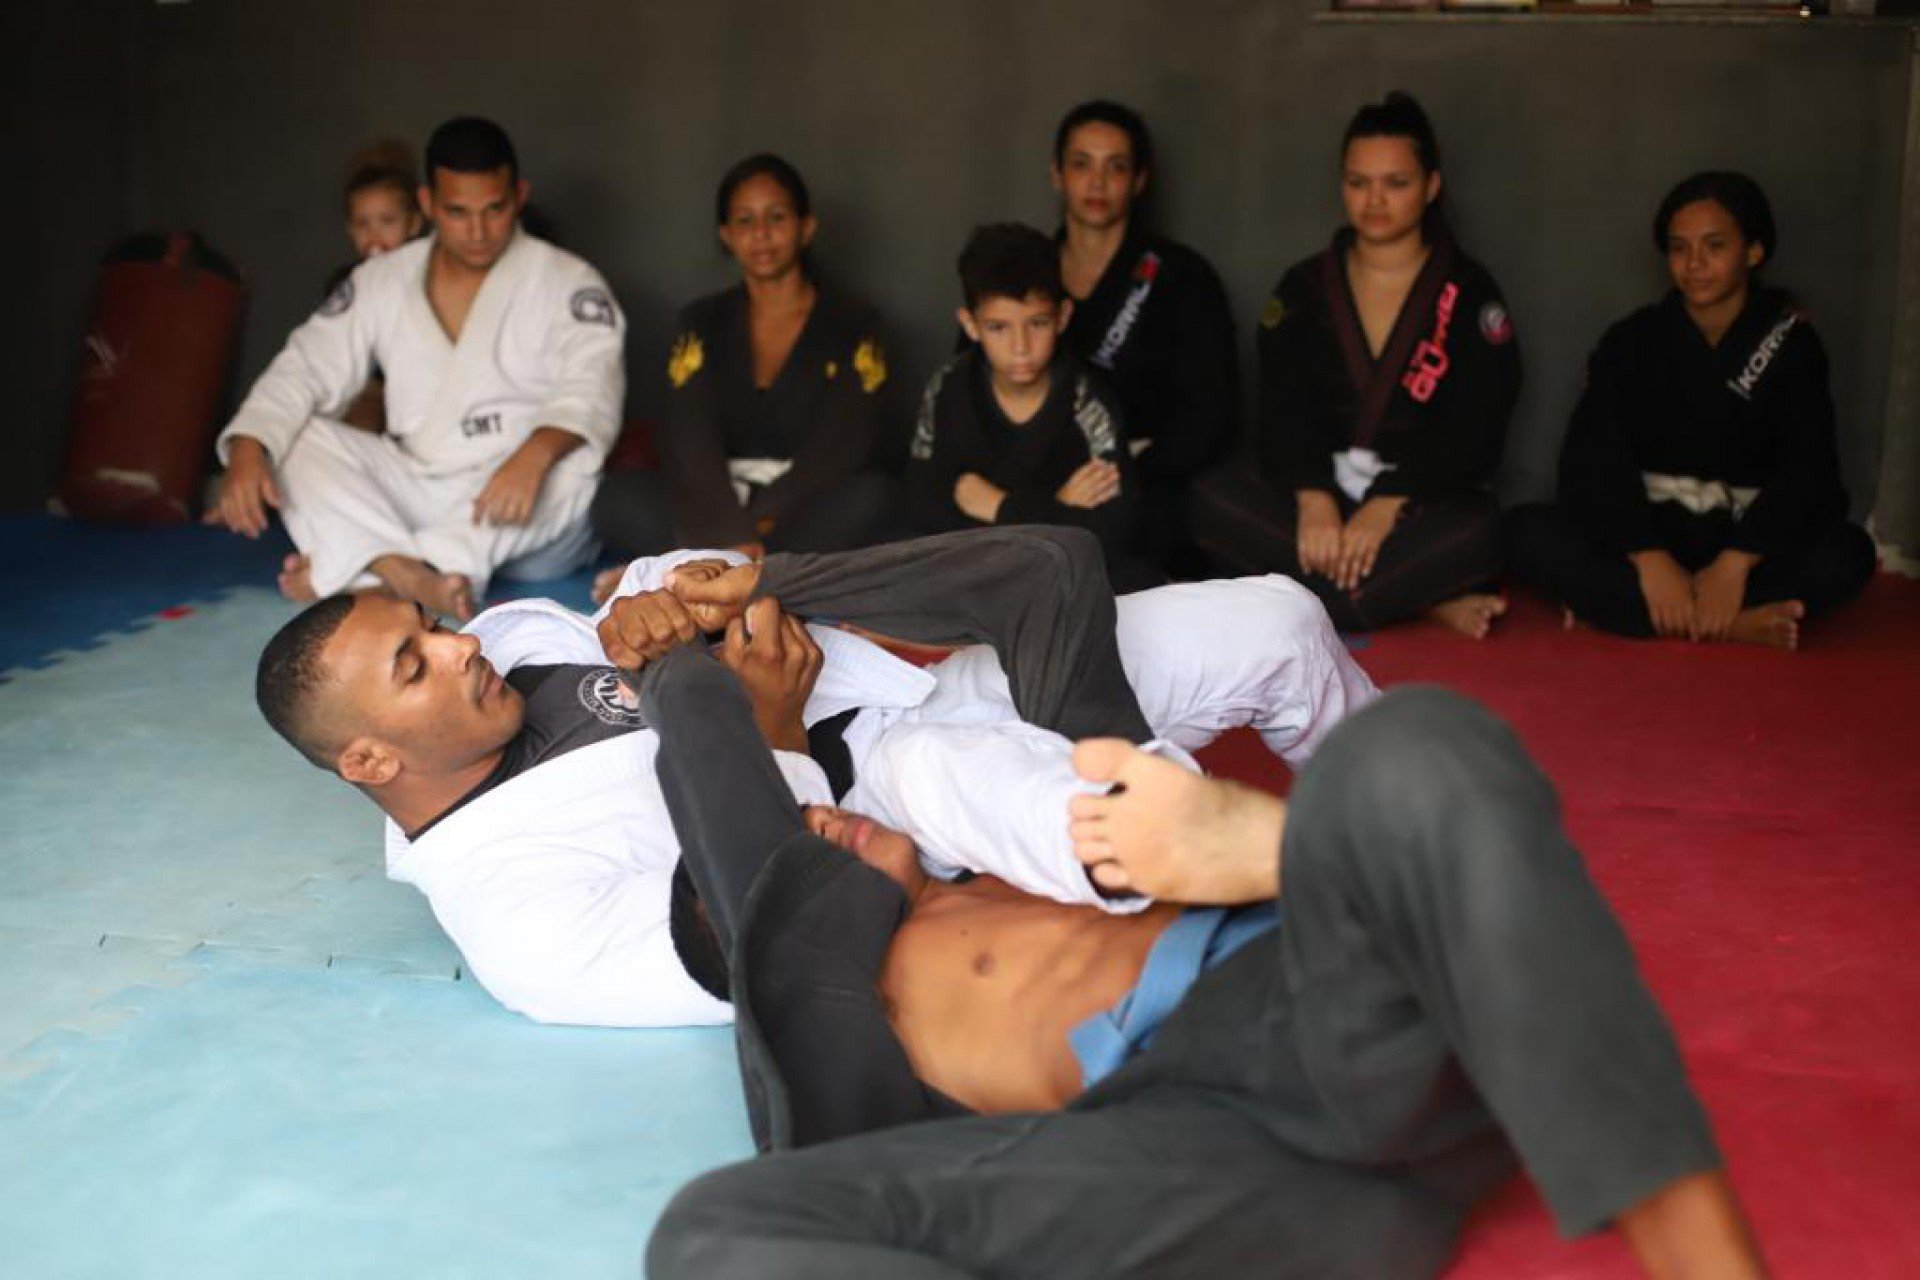 O peso médio, faixa marrom e que compete na categoria adulto, ficou em 1º lugar no Campeonato Brasileiro de Jiu-jitsu e no Mundial sem Kimono de Jiu-jitsu Olímpico - Divulgação 